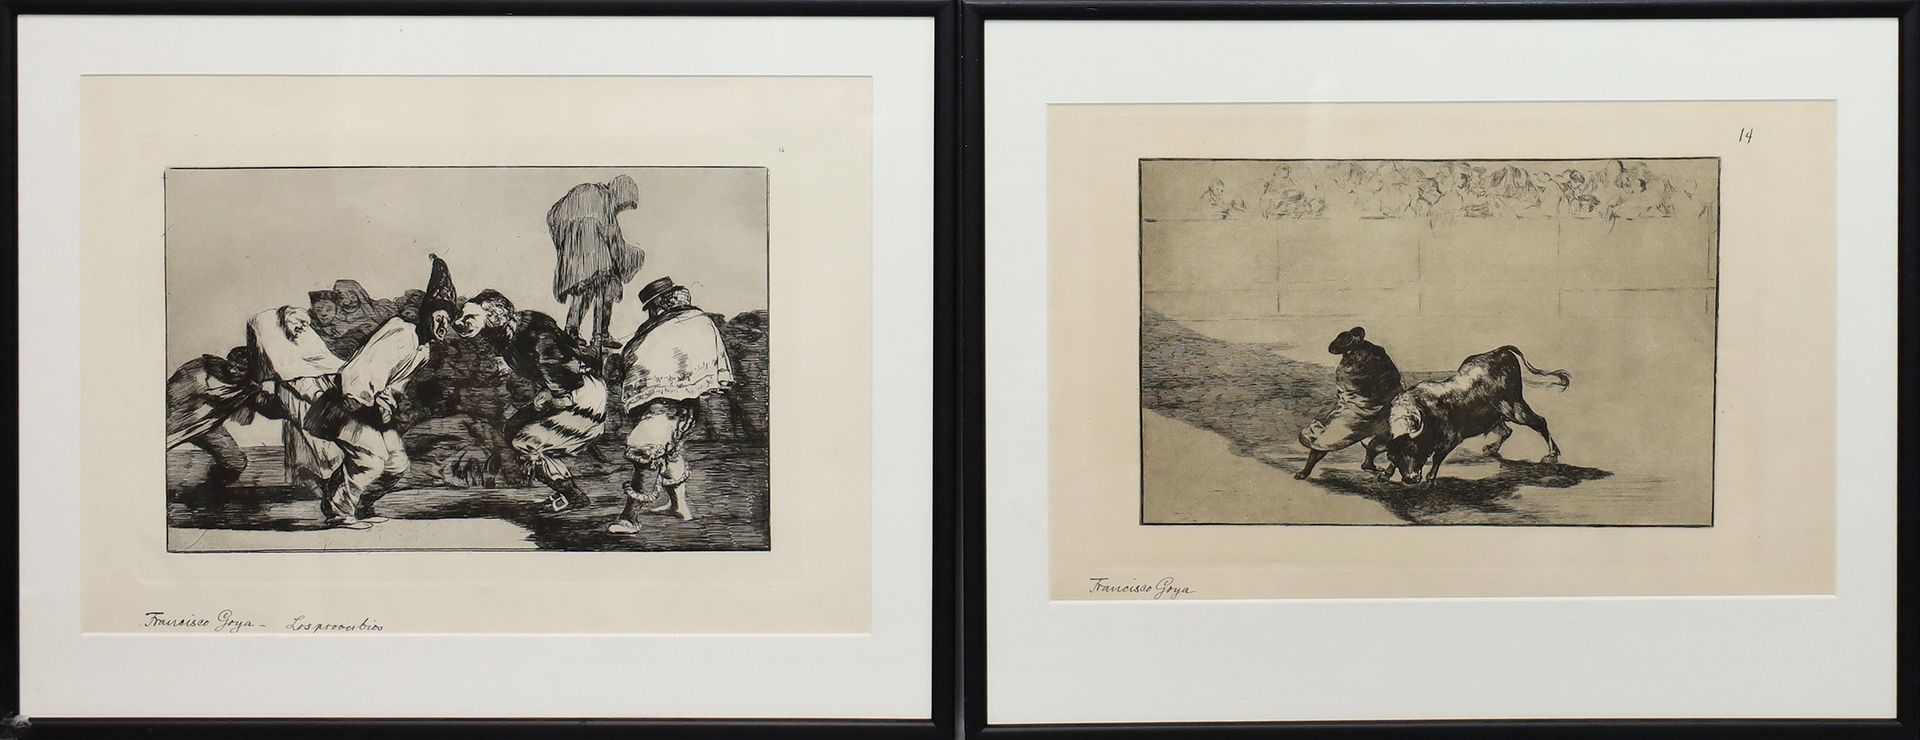 de Goya y Lucientes, Francisco José (1746 - 1828), nach